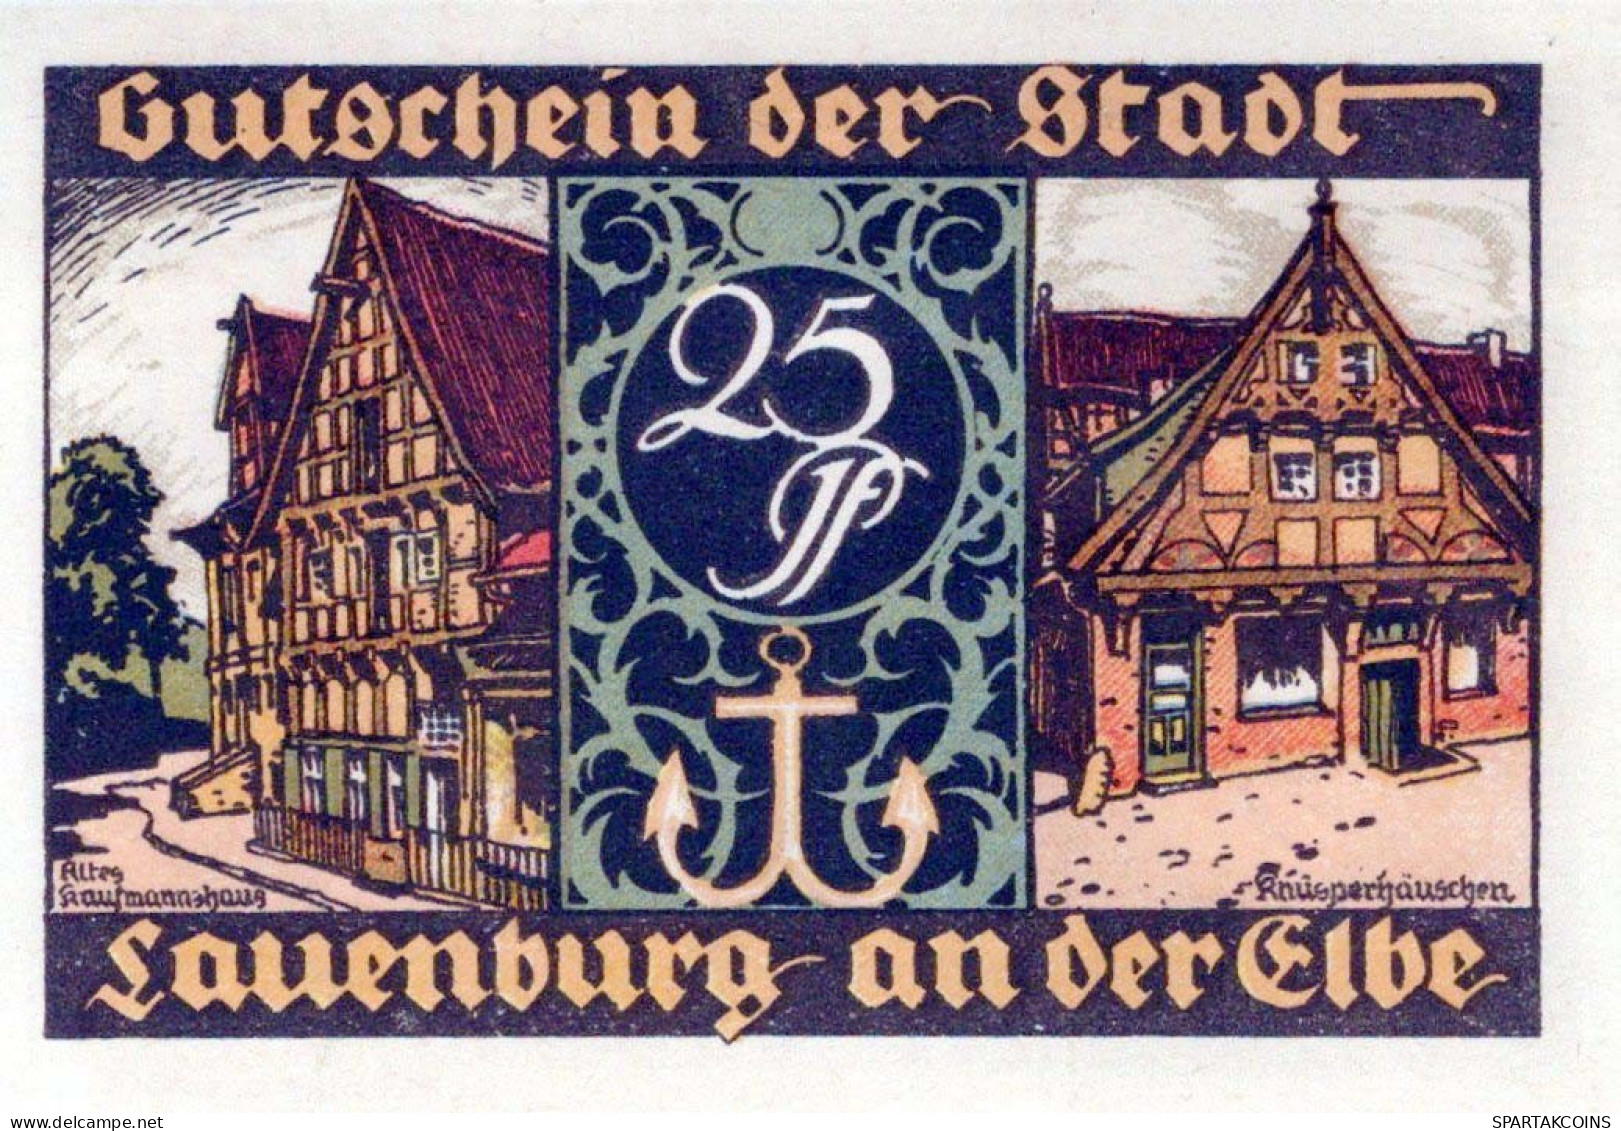 25 PFENNIG 1921 Stadt LAUENBURG AN DER ELBE UNC DEUTSCHLAND #PC030 - [11] Emisiones Locales